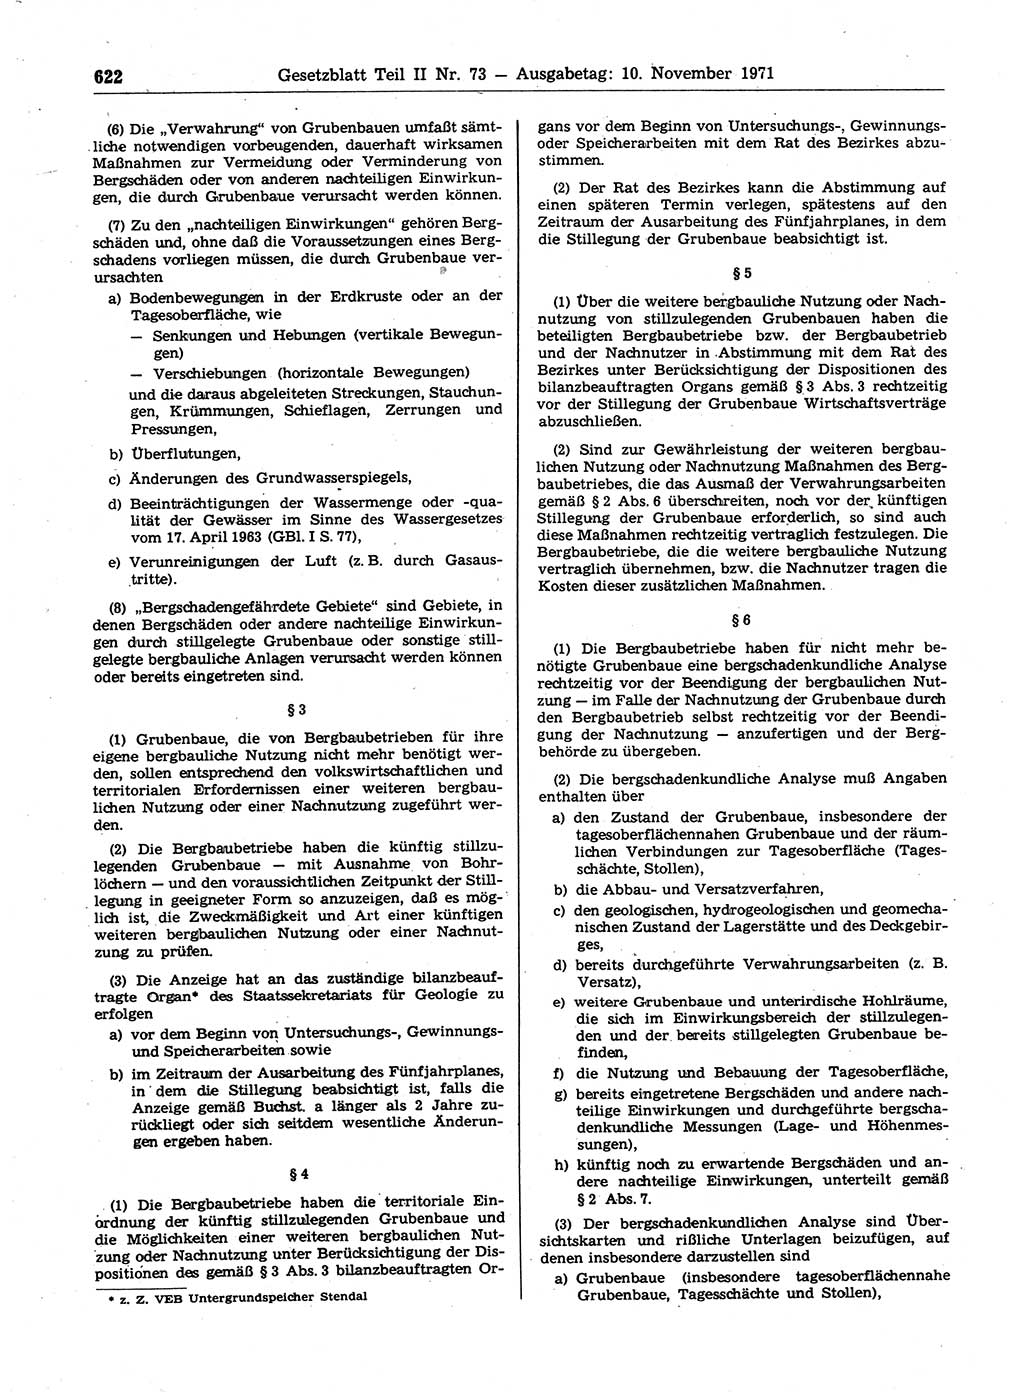 Gesetzblatt (GBl.) der Deutschen Demokratischen Republik (DDR) Teil ⅠⅠ 1971, Seite 622 (GBl. DDR ⅠⅠ 1971, S. 622)